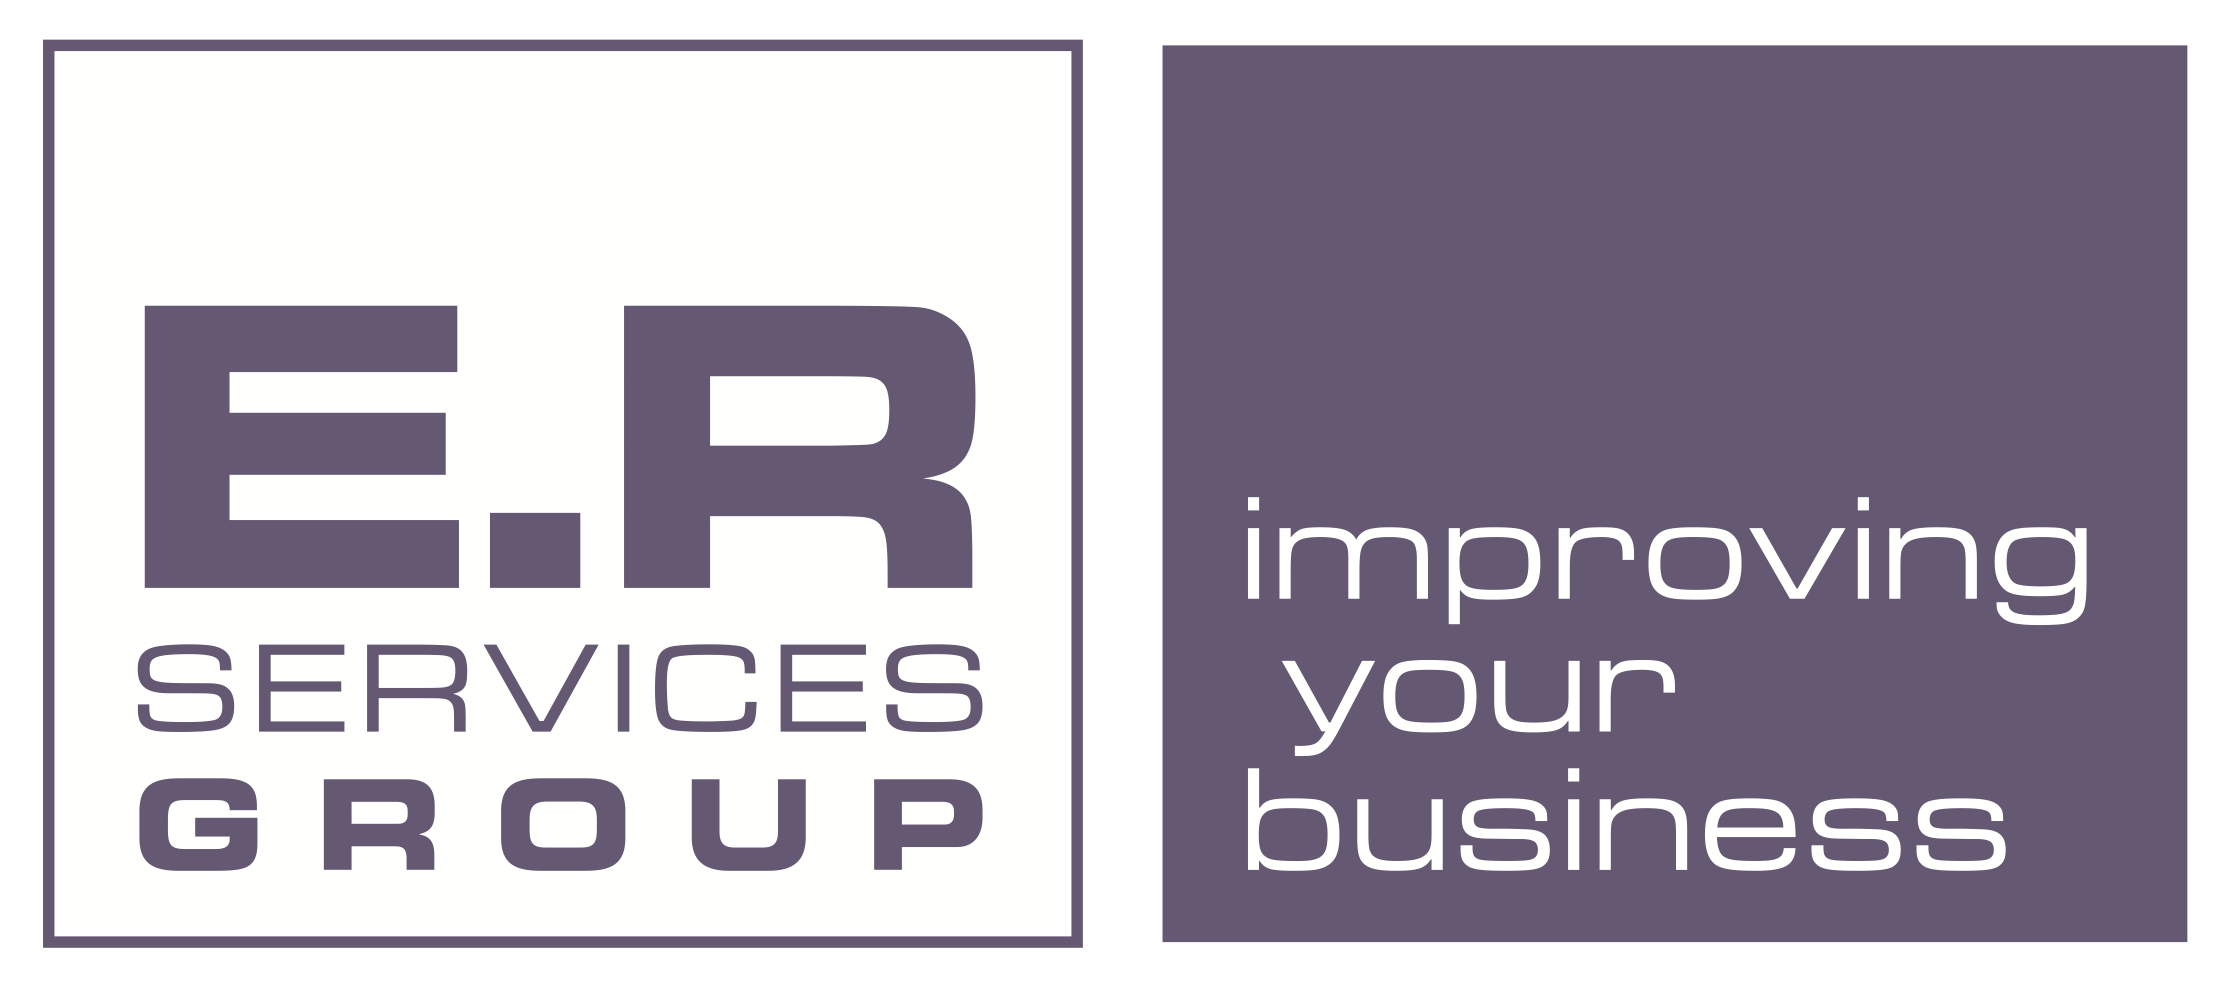 Paride Raspadori è Corporate Communication Manager di E.R Services Group. Ed è disponibile per consulenze in Aziende che vogliano rendersi più competitive.